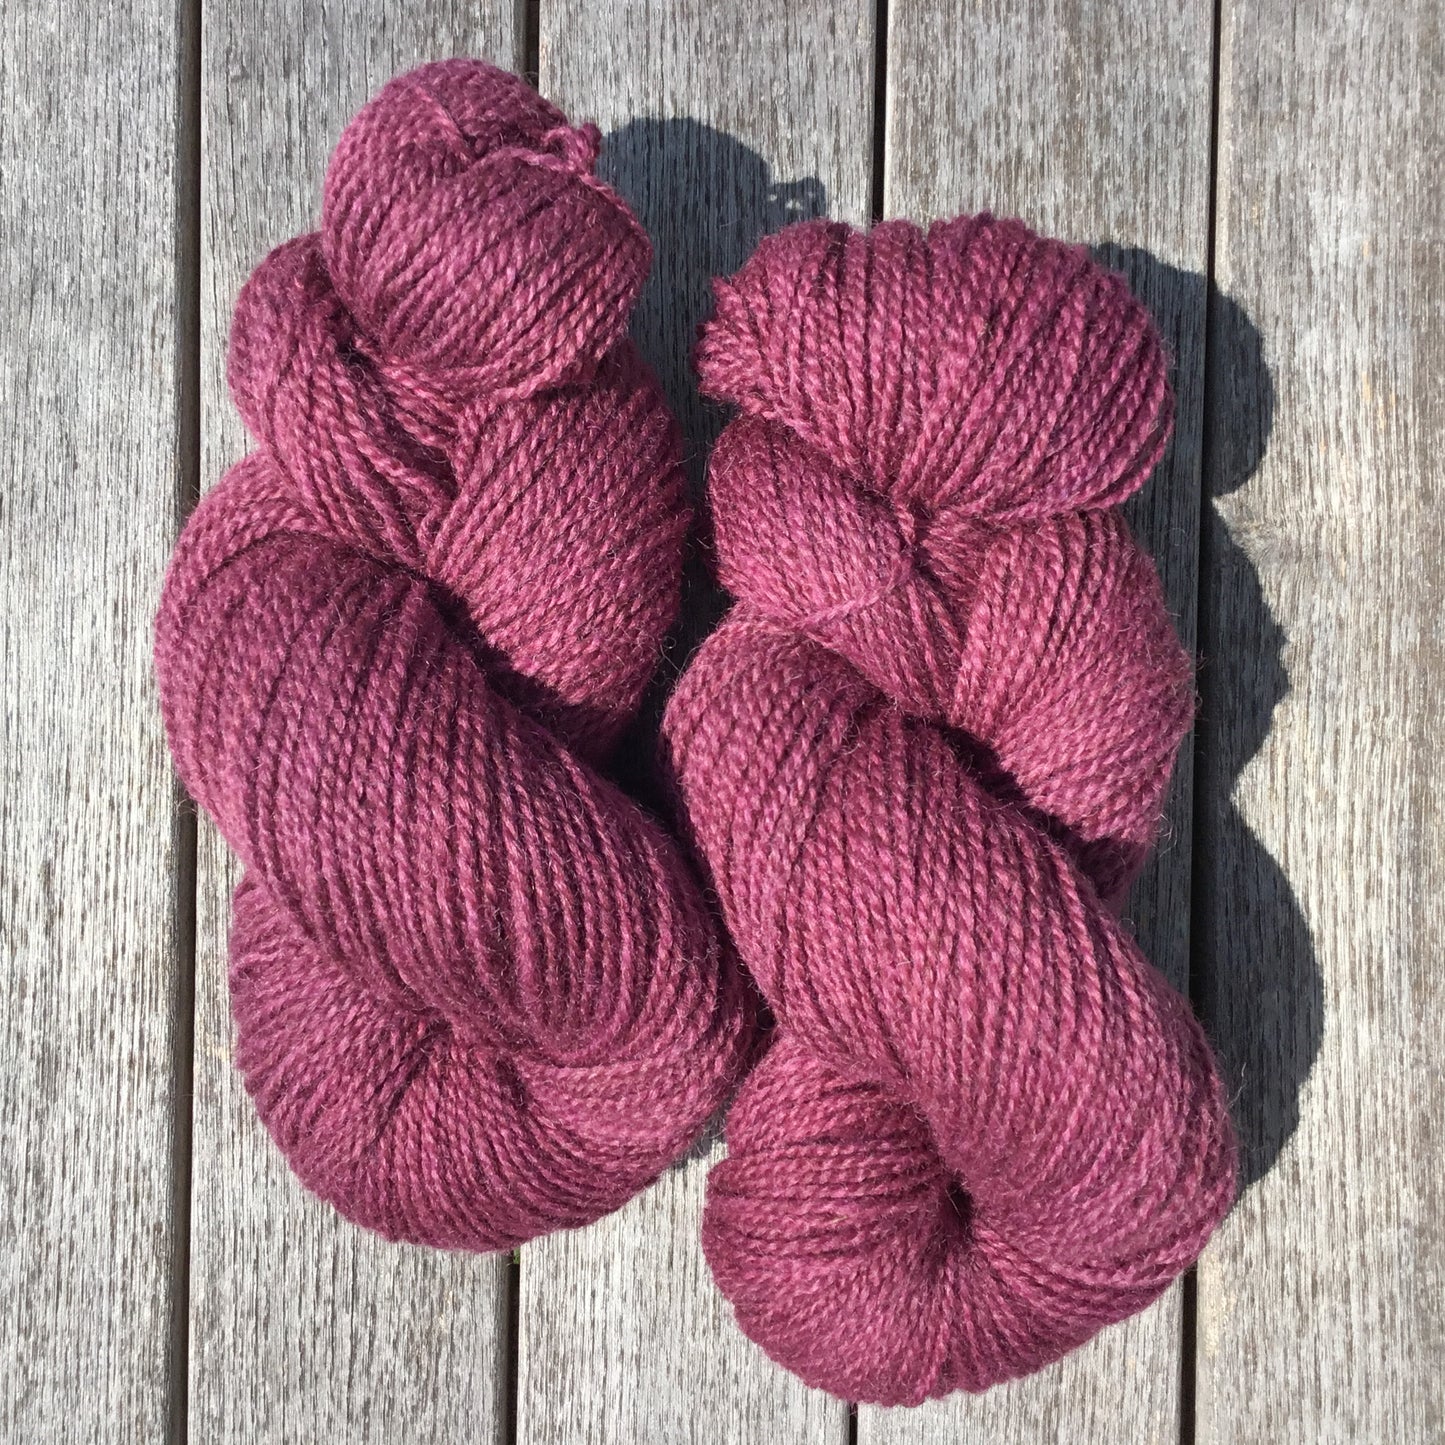 Wine berry - Worsted Wool Yarn (40 Merino 60 Romney) 2 ply - 4 oz skeins